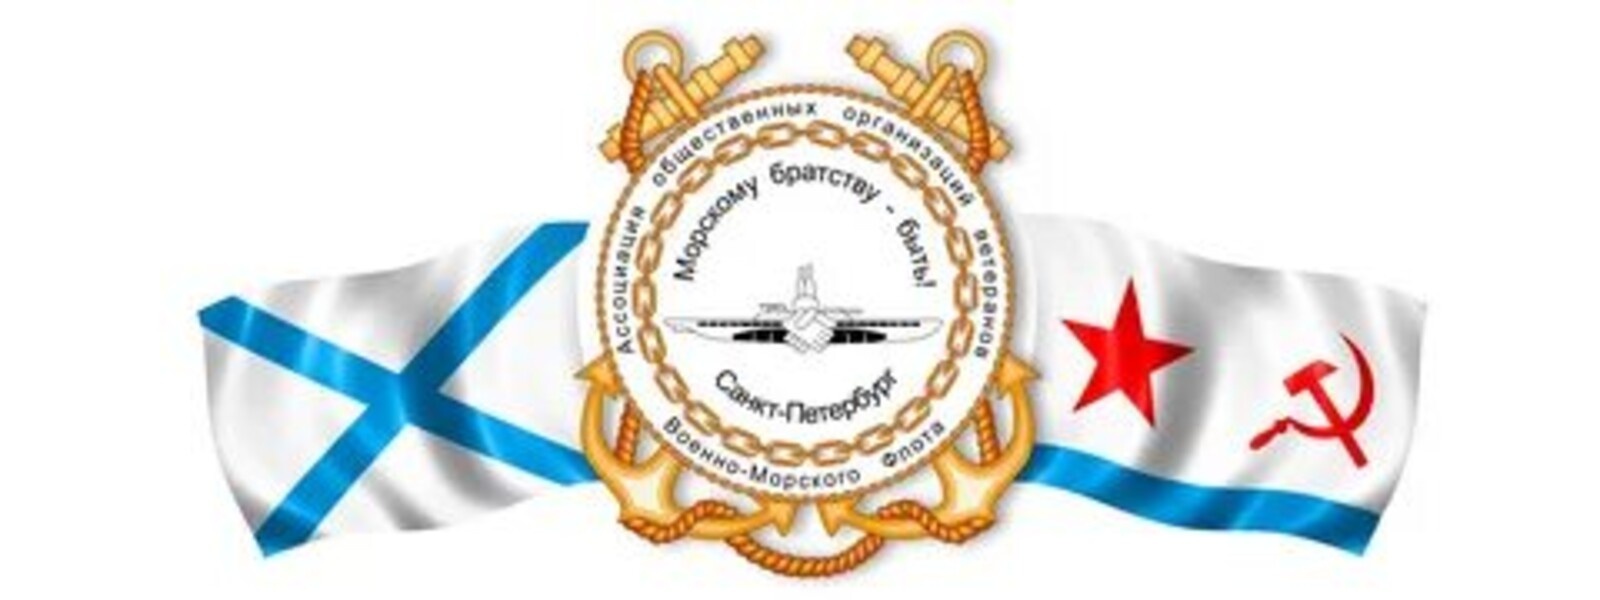 Герб военно морского флота РФ